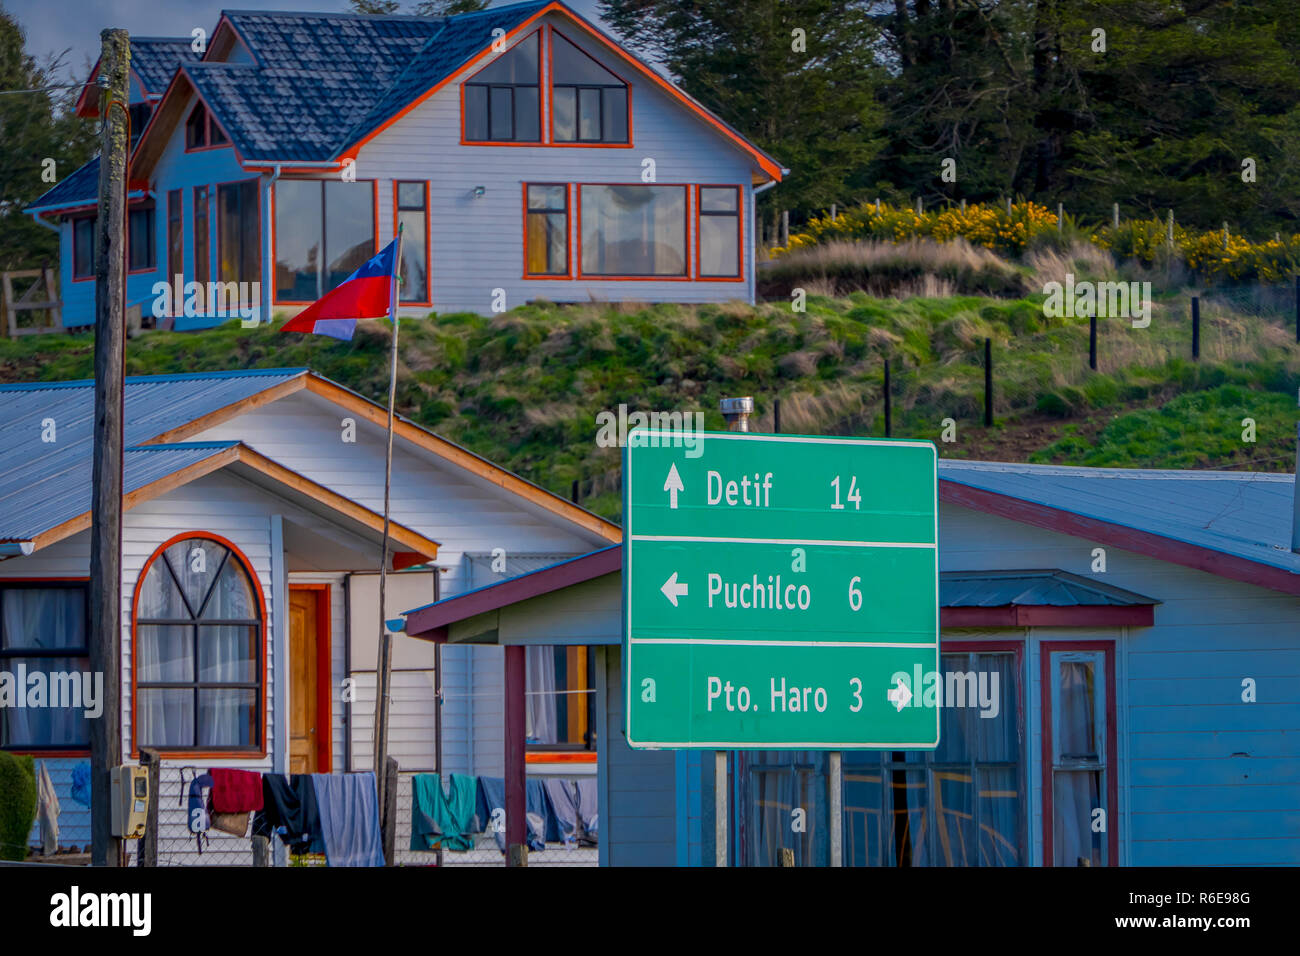 Chiloé, Chili - 27 septembre, 2018 : Piscine en plein air avec quelques signe informatif métallique des bâtiments en bois derrière sur l'île de Chiloé Banque D'Images